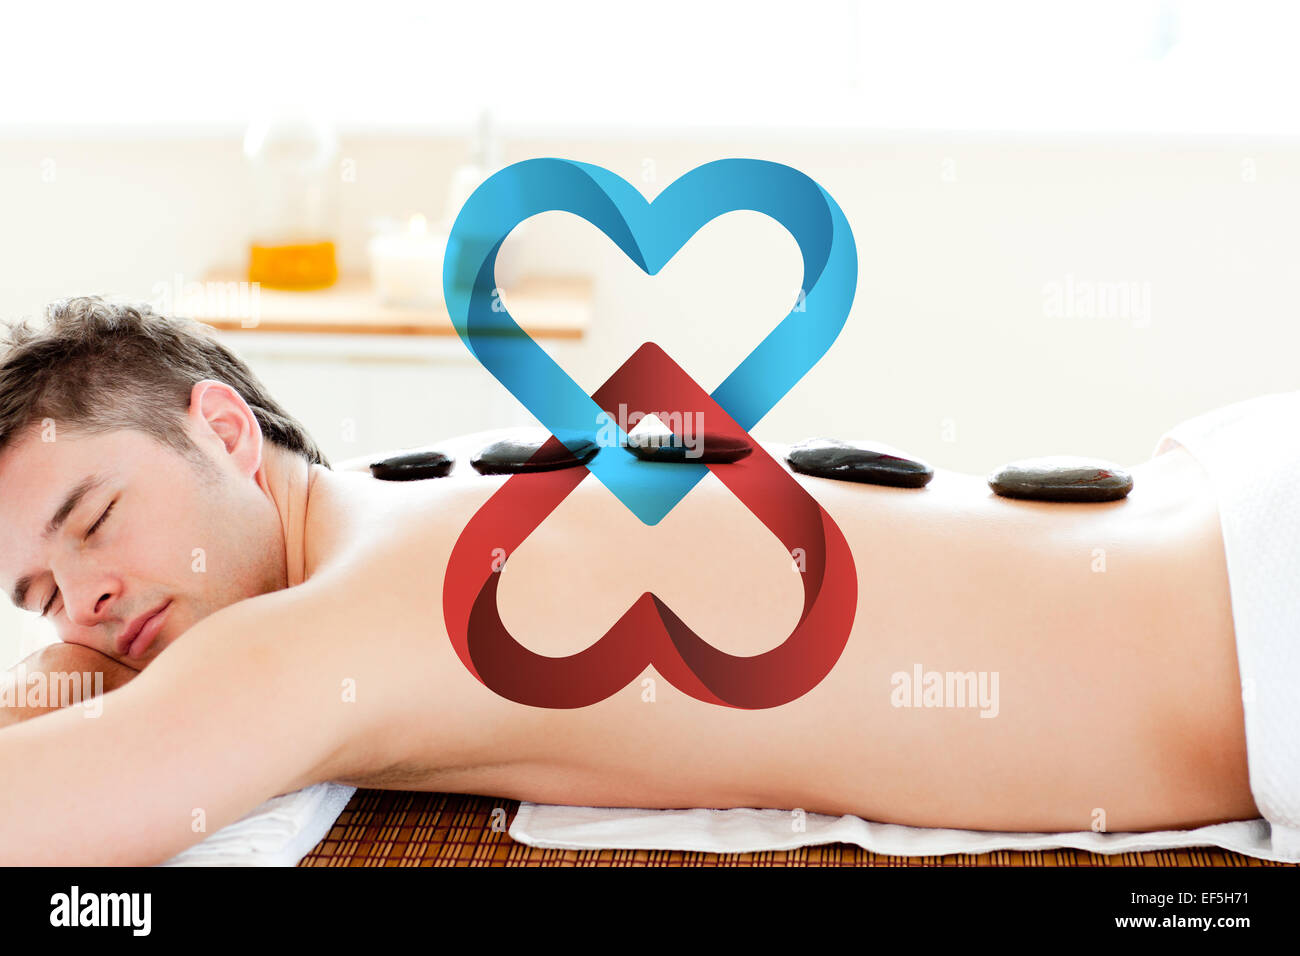 Immagine composita di rilassata man aventi con pietra calda sulla sua schiena Foto Stock